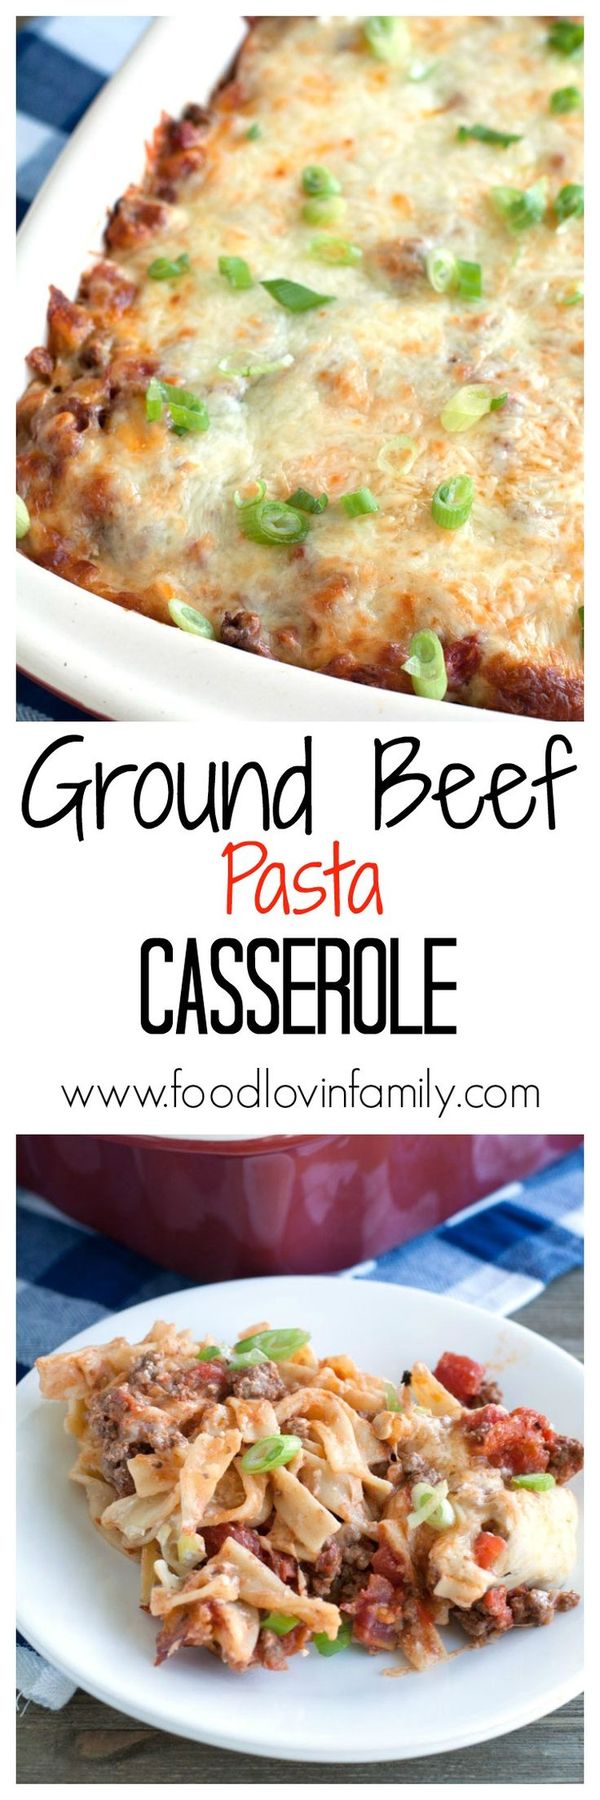 Ground Beef Pasta Casserole